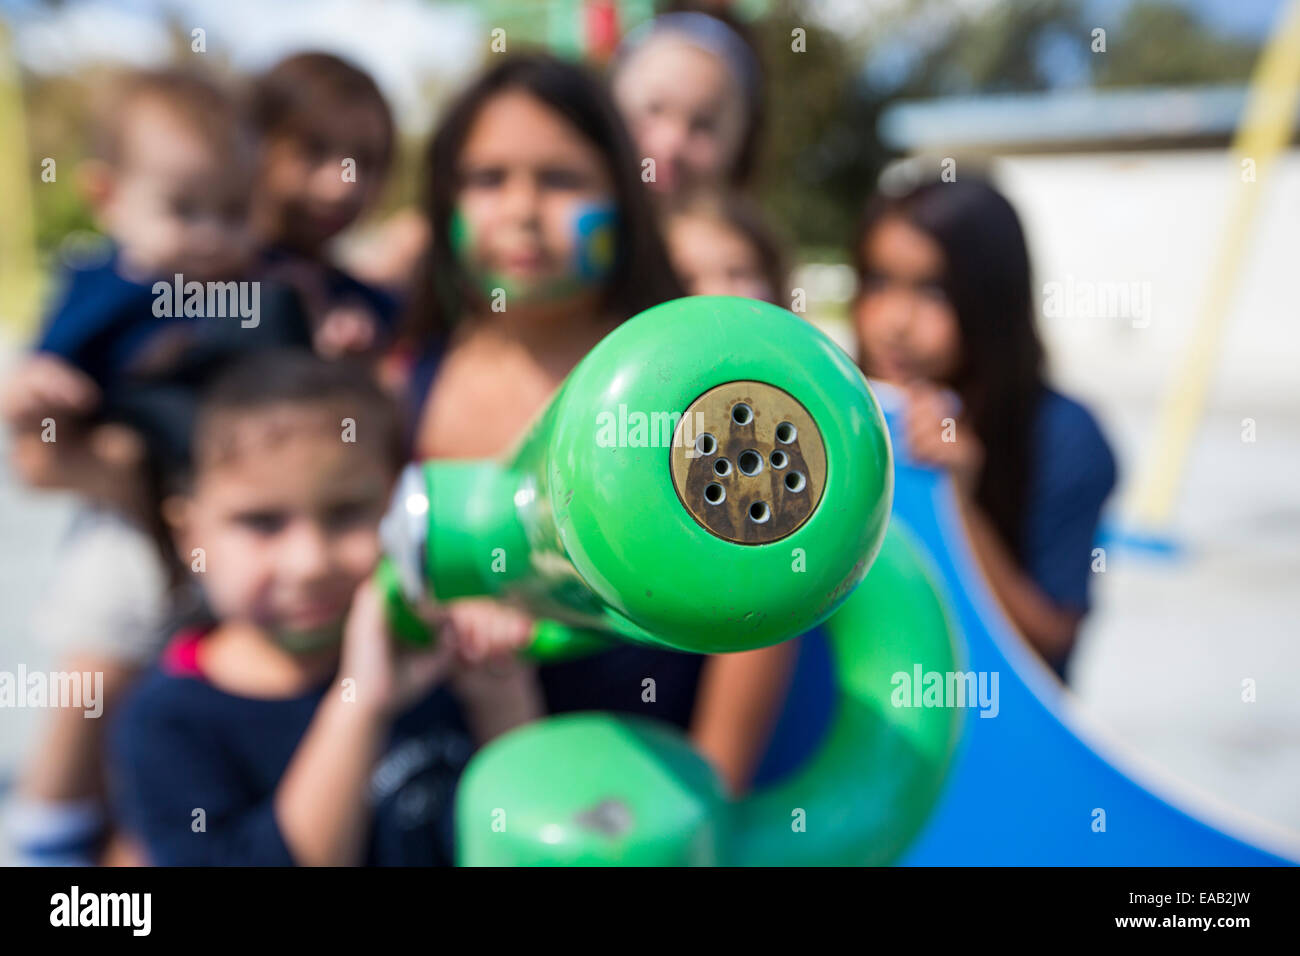 Les enfants dans un parc de pulvérisation à Bakersfield, Californie, USA. Après les quatre ans de sécheresse, Bakersfield est maintenant le plus sec des villes des USA. Toutes les villes parcs de pulvérisation ont été fermées comme il n'y a plus assez d'eau pour les faire fonctionner. Banque D'Images